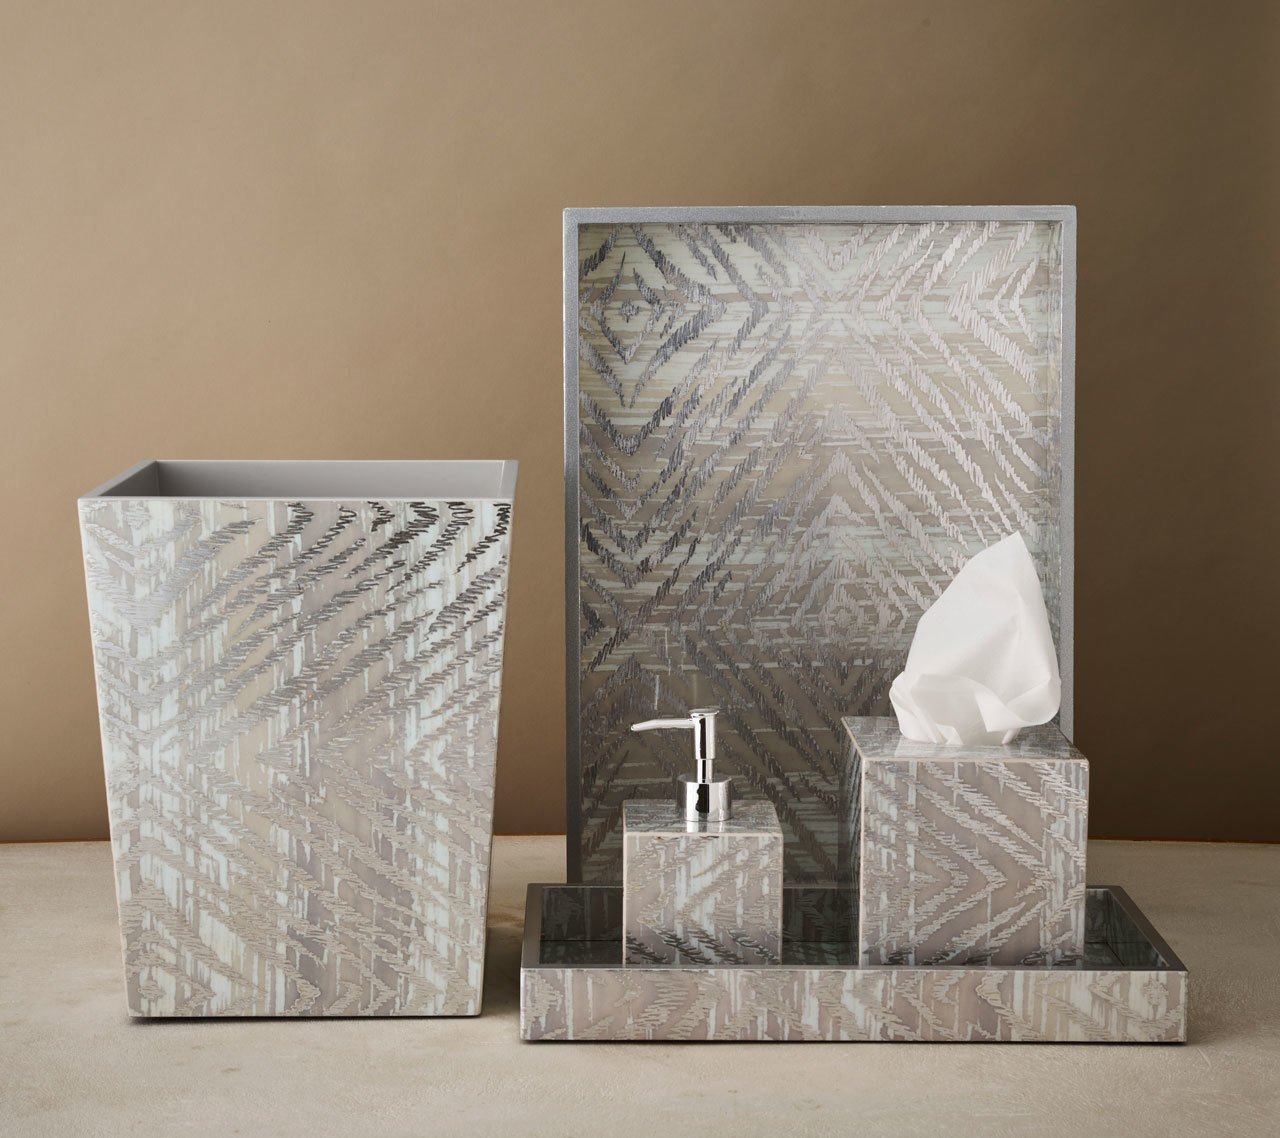 Kim Seybert Luxury Zebra Soap Dispenser